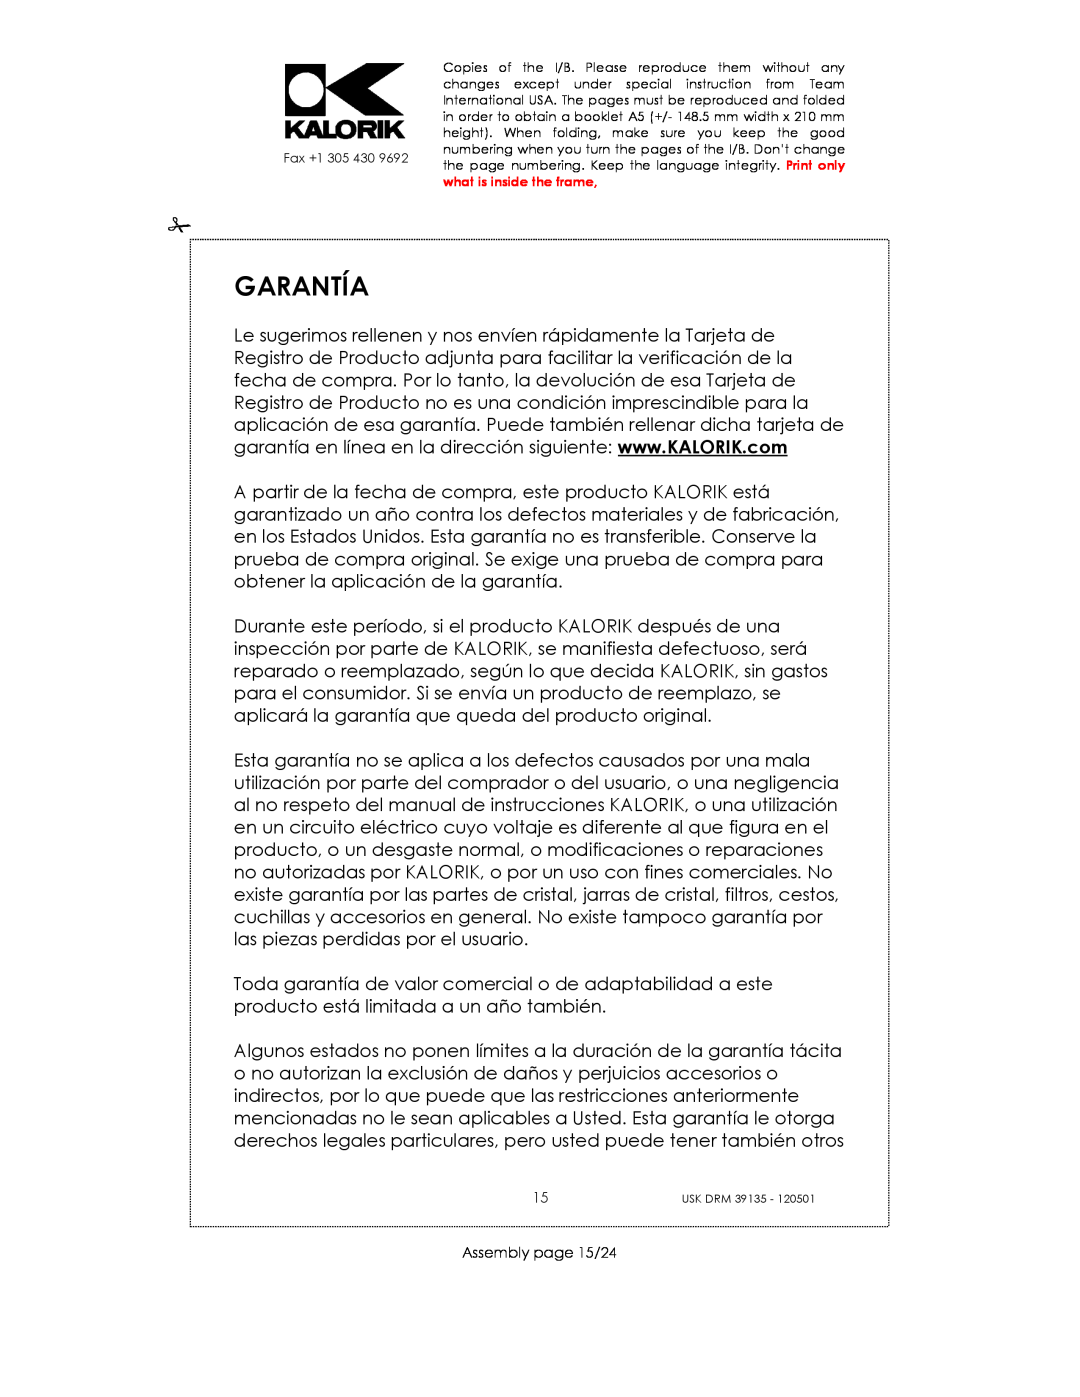 Kalorik USK DRM 39135 manual Garantía, Assembly page 15/24 